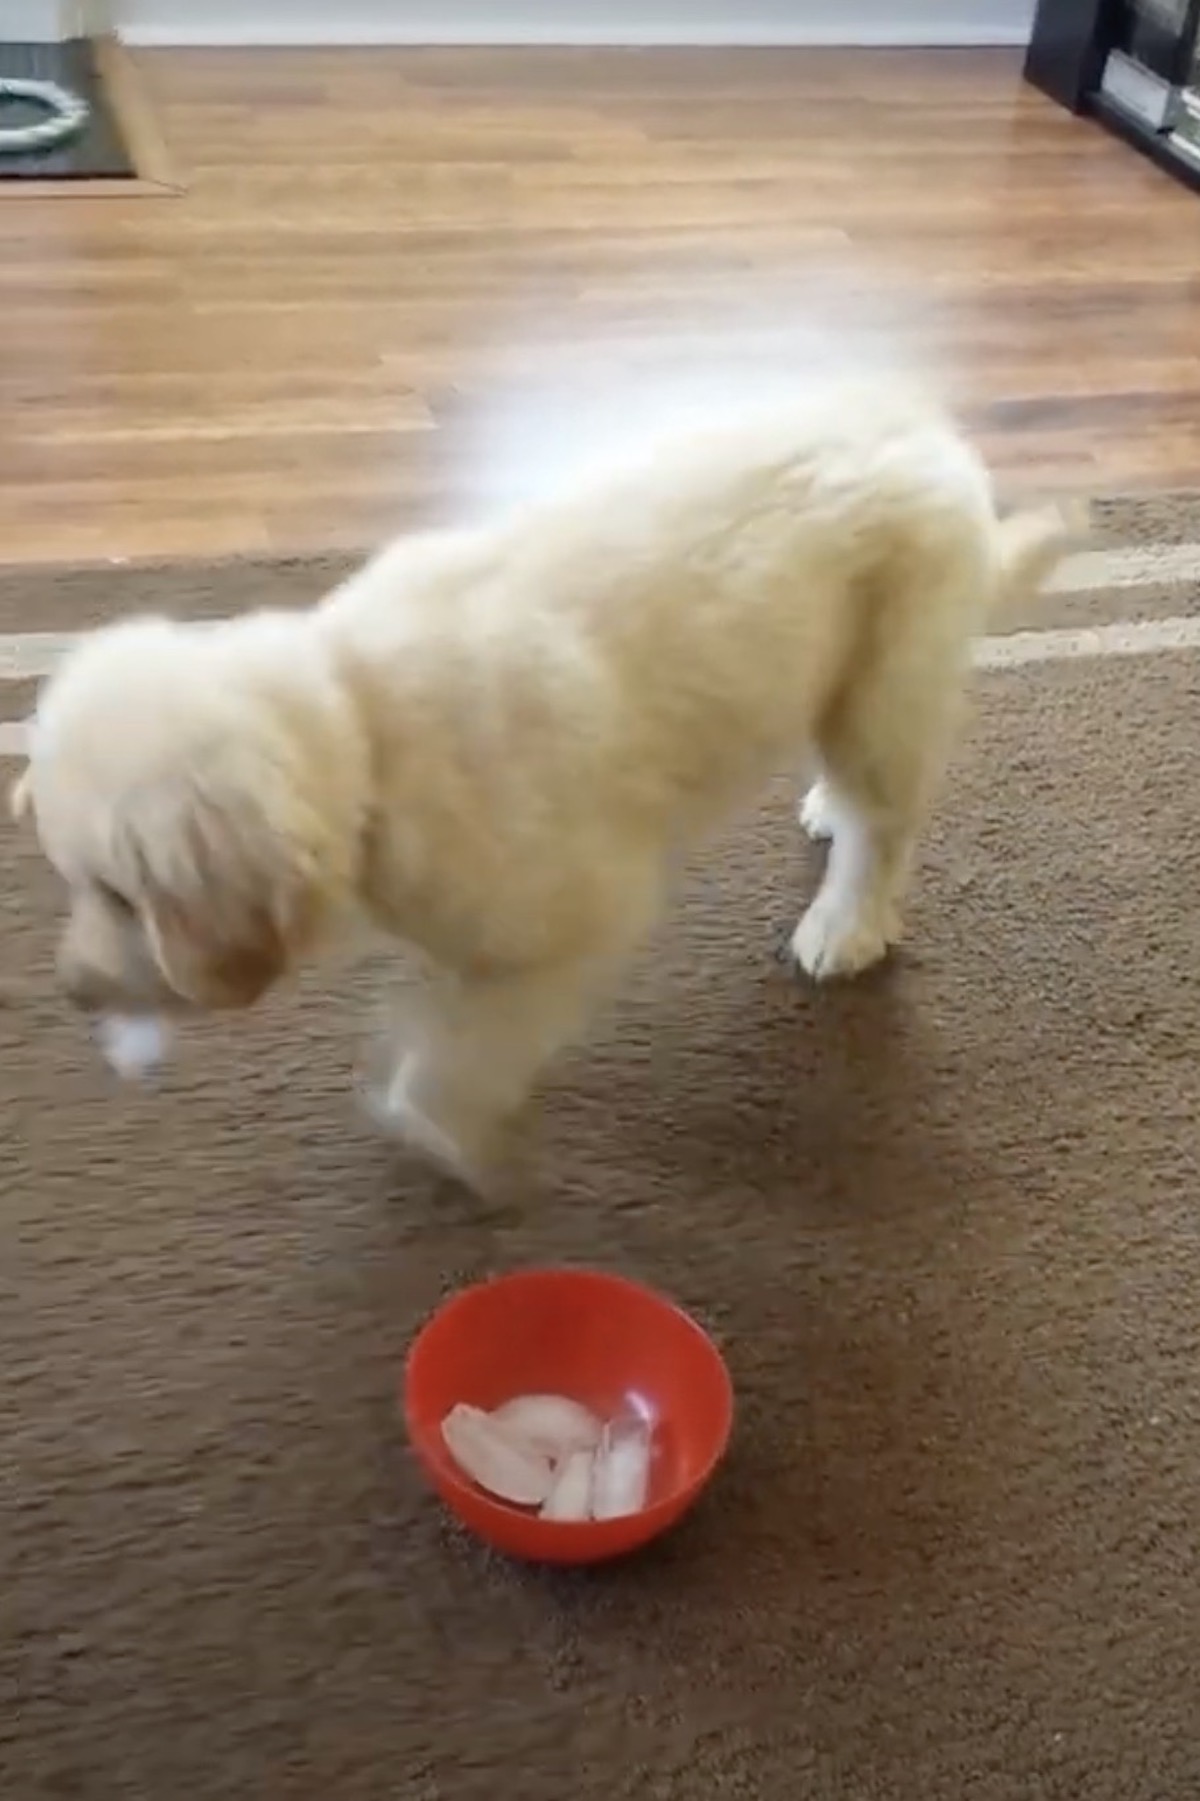 ゴールデンレトリバーの子犬に「初めての氷」をあげたら…怖がりながらも興味津々な姿に、ほっこり癒やされる